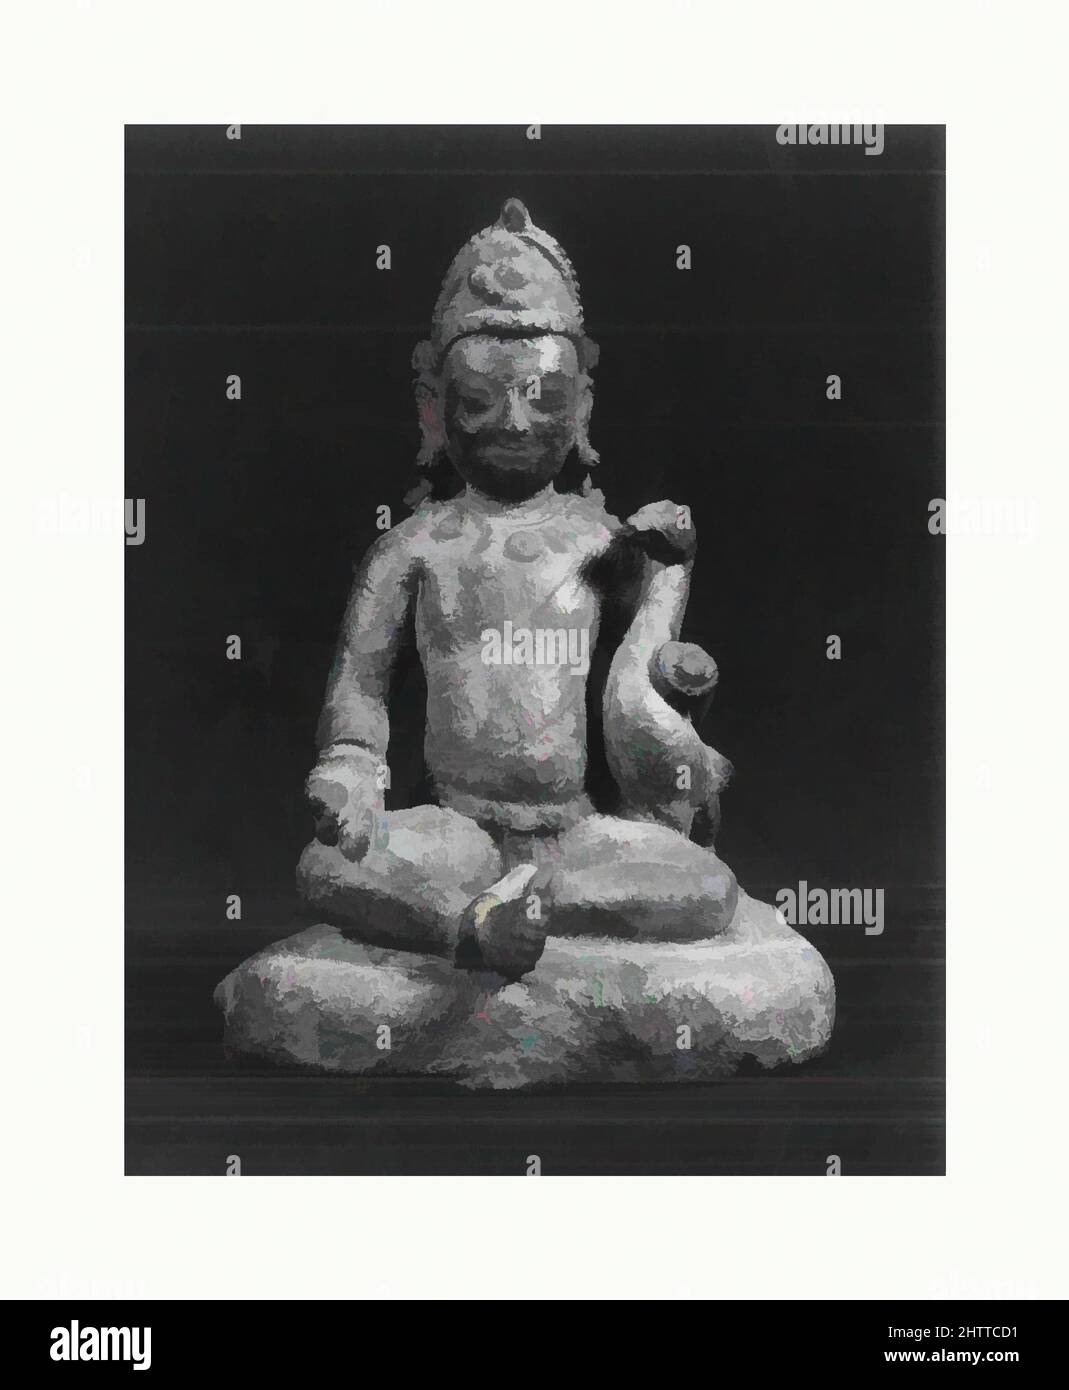 Kunst inspiriert von Kumara mit einem Pfau, Thakuri-Zeit, 11.. Jahrhundert, Nepal (Kathmandu-Tal), Kupferlegierung, H. 5 1/2 Zoll (14 cm); B: 3 3/4 Zoll (9,5 cm); D. 3 Zoll (7,6 cm), Skulptur, Kumara („der ewig junge Sohn“) ist ein Beinamen von Skanda, einem Sohn von Shiva und Parvati. Er ist, Classic Works modernisiert von Artotop mit einem Schuss Moderne. Formen, Farbe und Wert, auffällige visuelle Wirkung auf Kunst. Emotionen durch Freiheit von Kunstwerken auf zeitgemäße Weise. Eine zeitlose Botschaft, die eine wild kreative neue Richtung verfolgt. Künstler, die sich dem digitalen Medium zuwenden und die Artotop NFT erschaffen Stockfoto